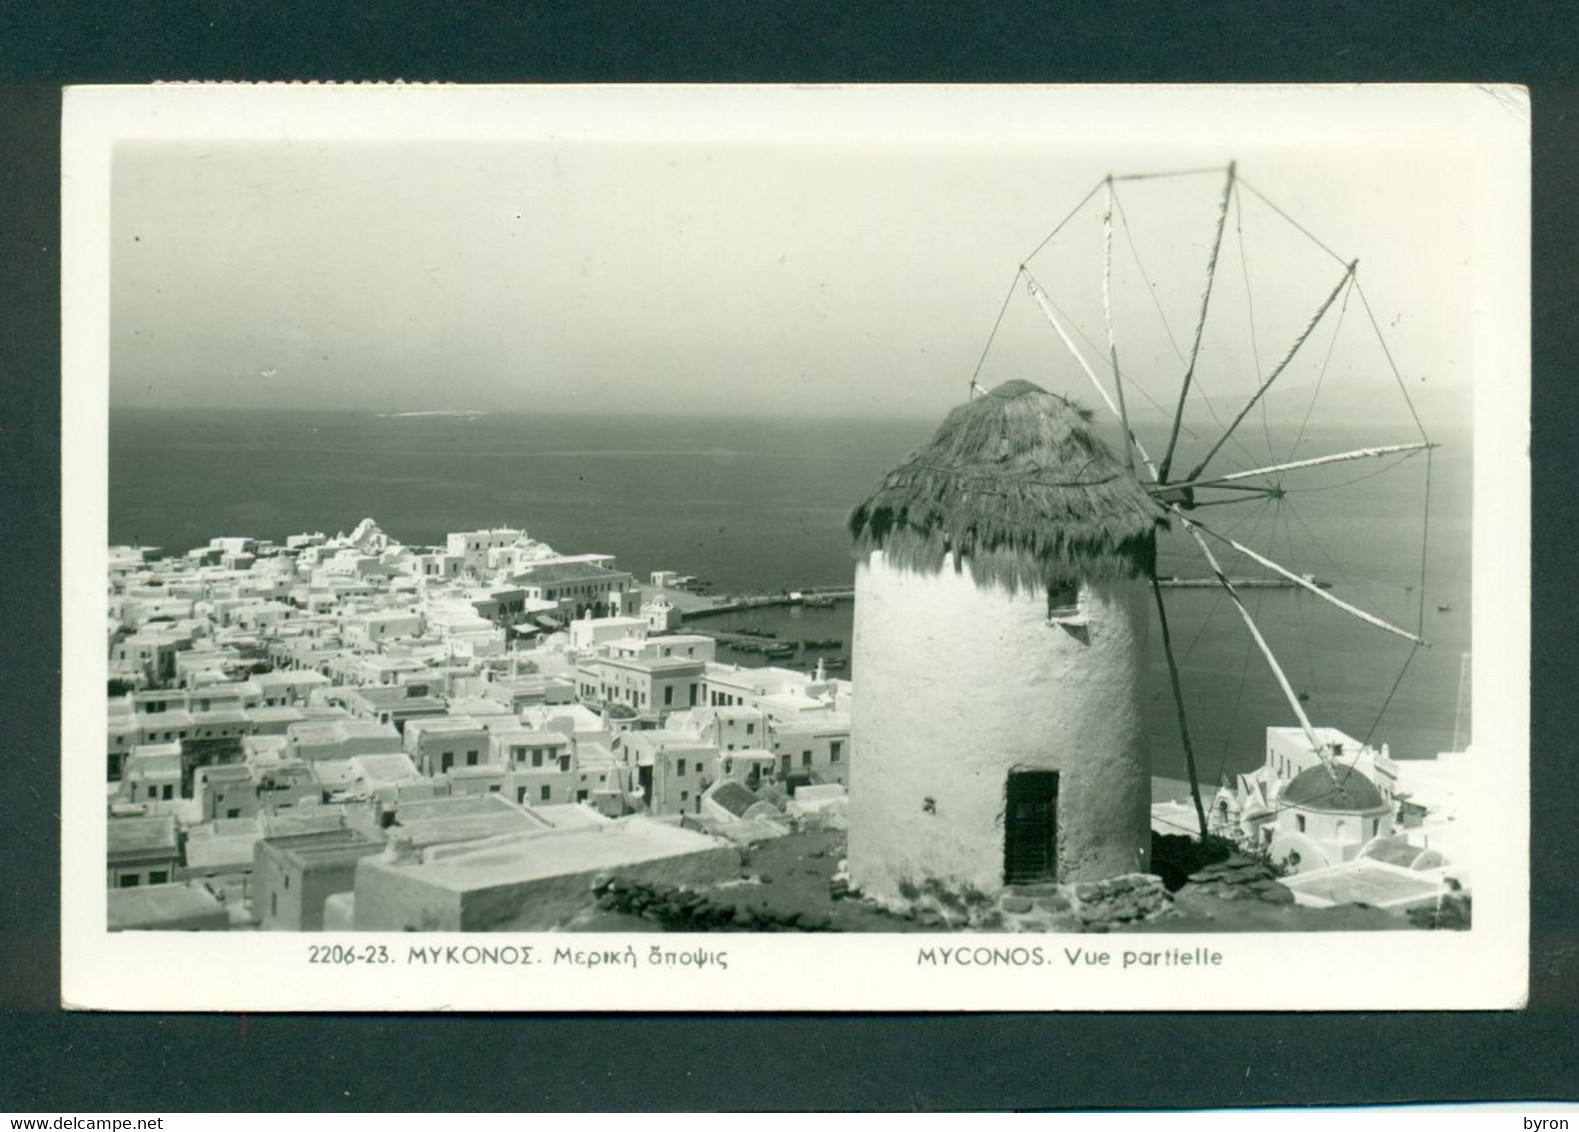 GRECE GREECE AEGEAN ISLANDS MYKONOS. 2 ORIGINAL OLD POSTCARDS 1950s.  IN VERY FINE CONDITION. - Grecia